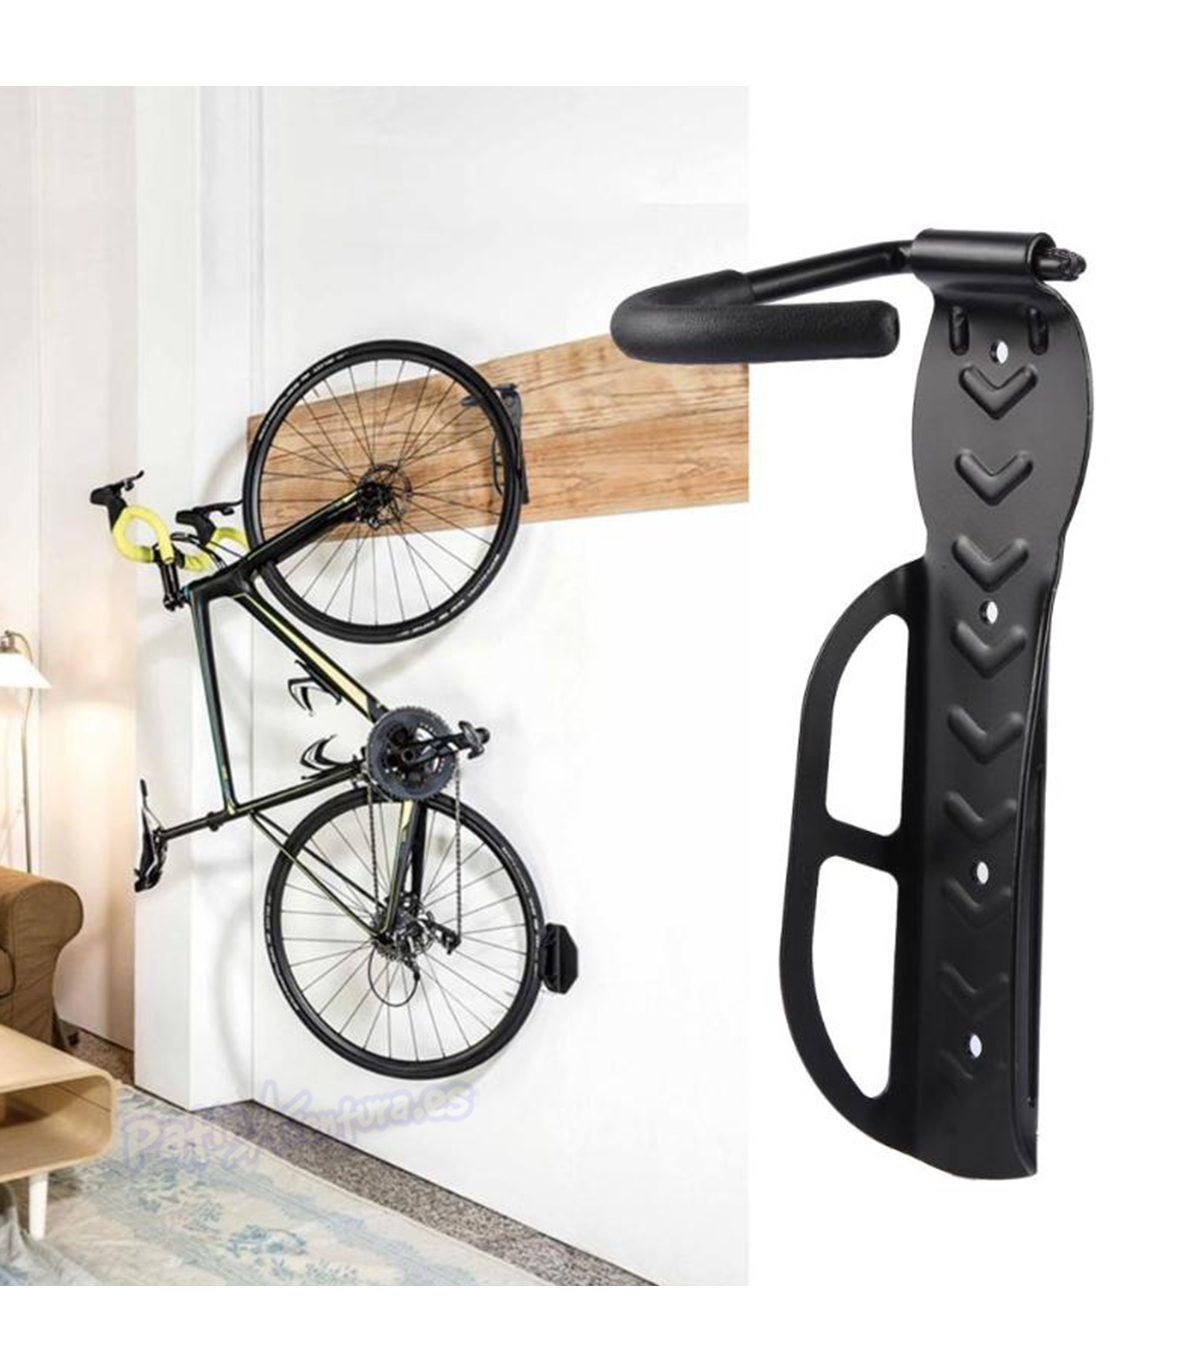 LEICHTEN Soporte de pared ajustable para bicicleta, ganchos